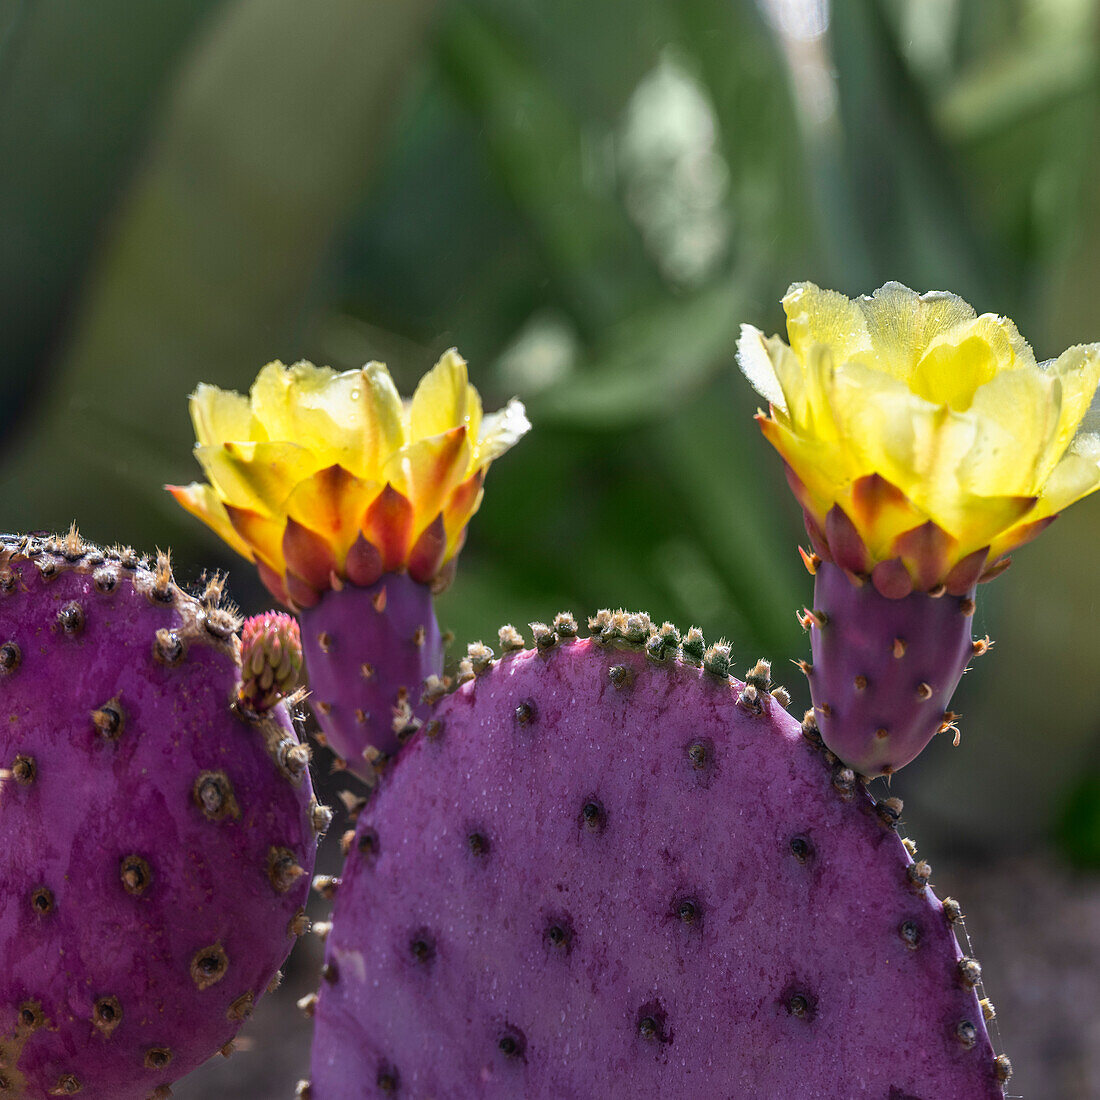 USA, Arizona, Tucson, Nahaufnahme eines blühenden Kaktus mit Feigenkaktus